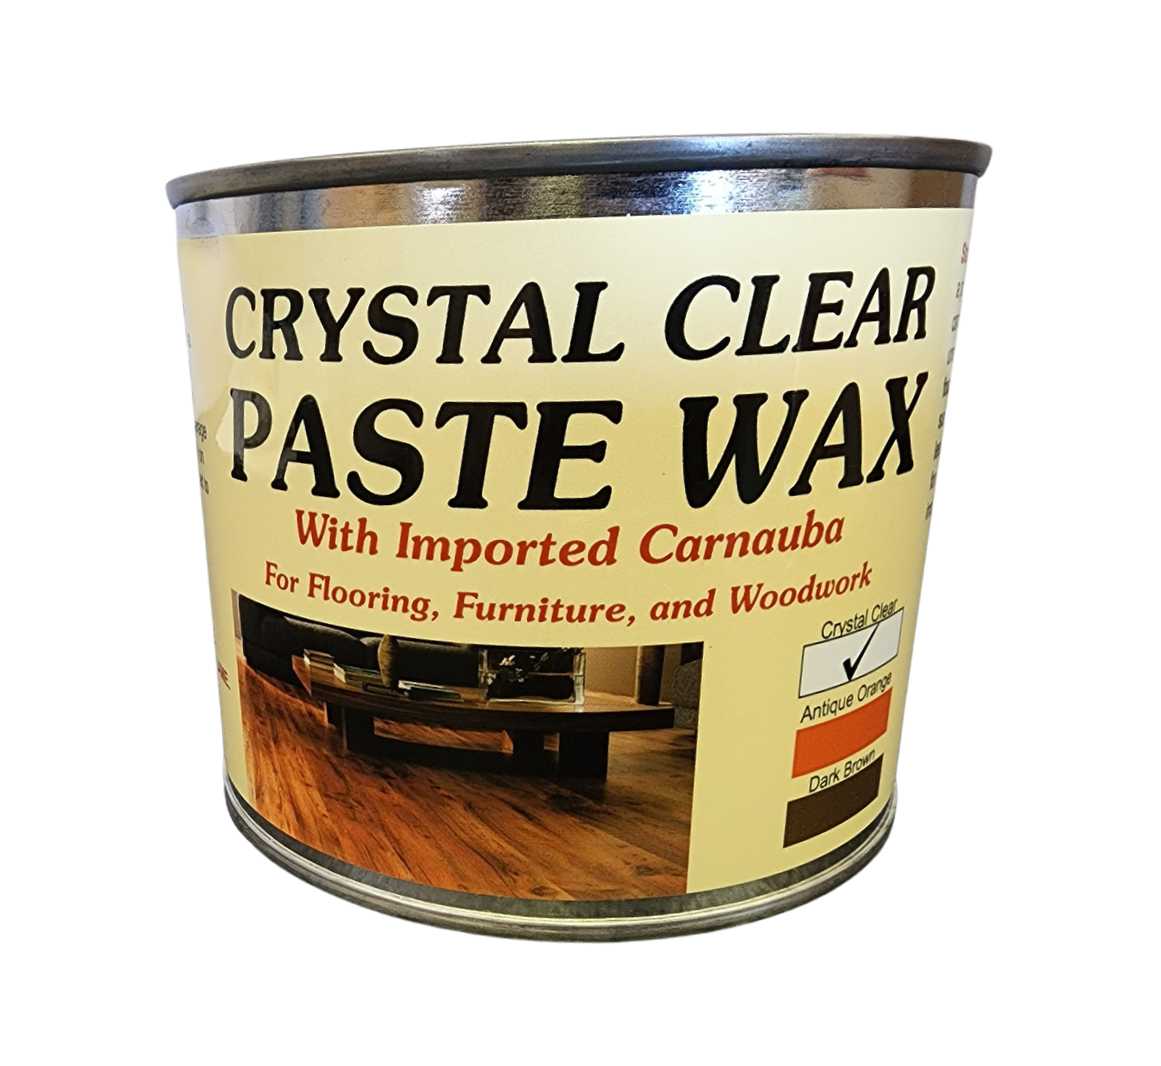 Crystal Clear Bowling Alley Wax 4LB